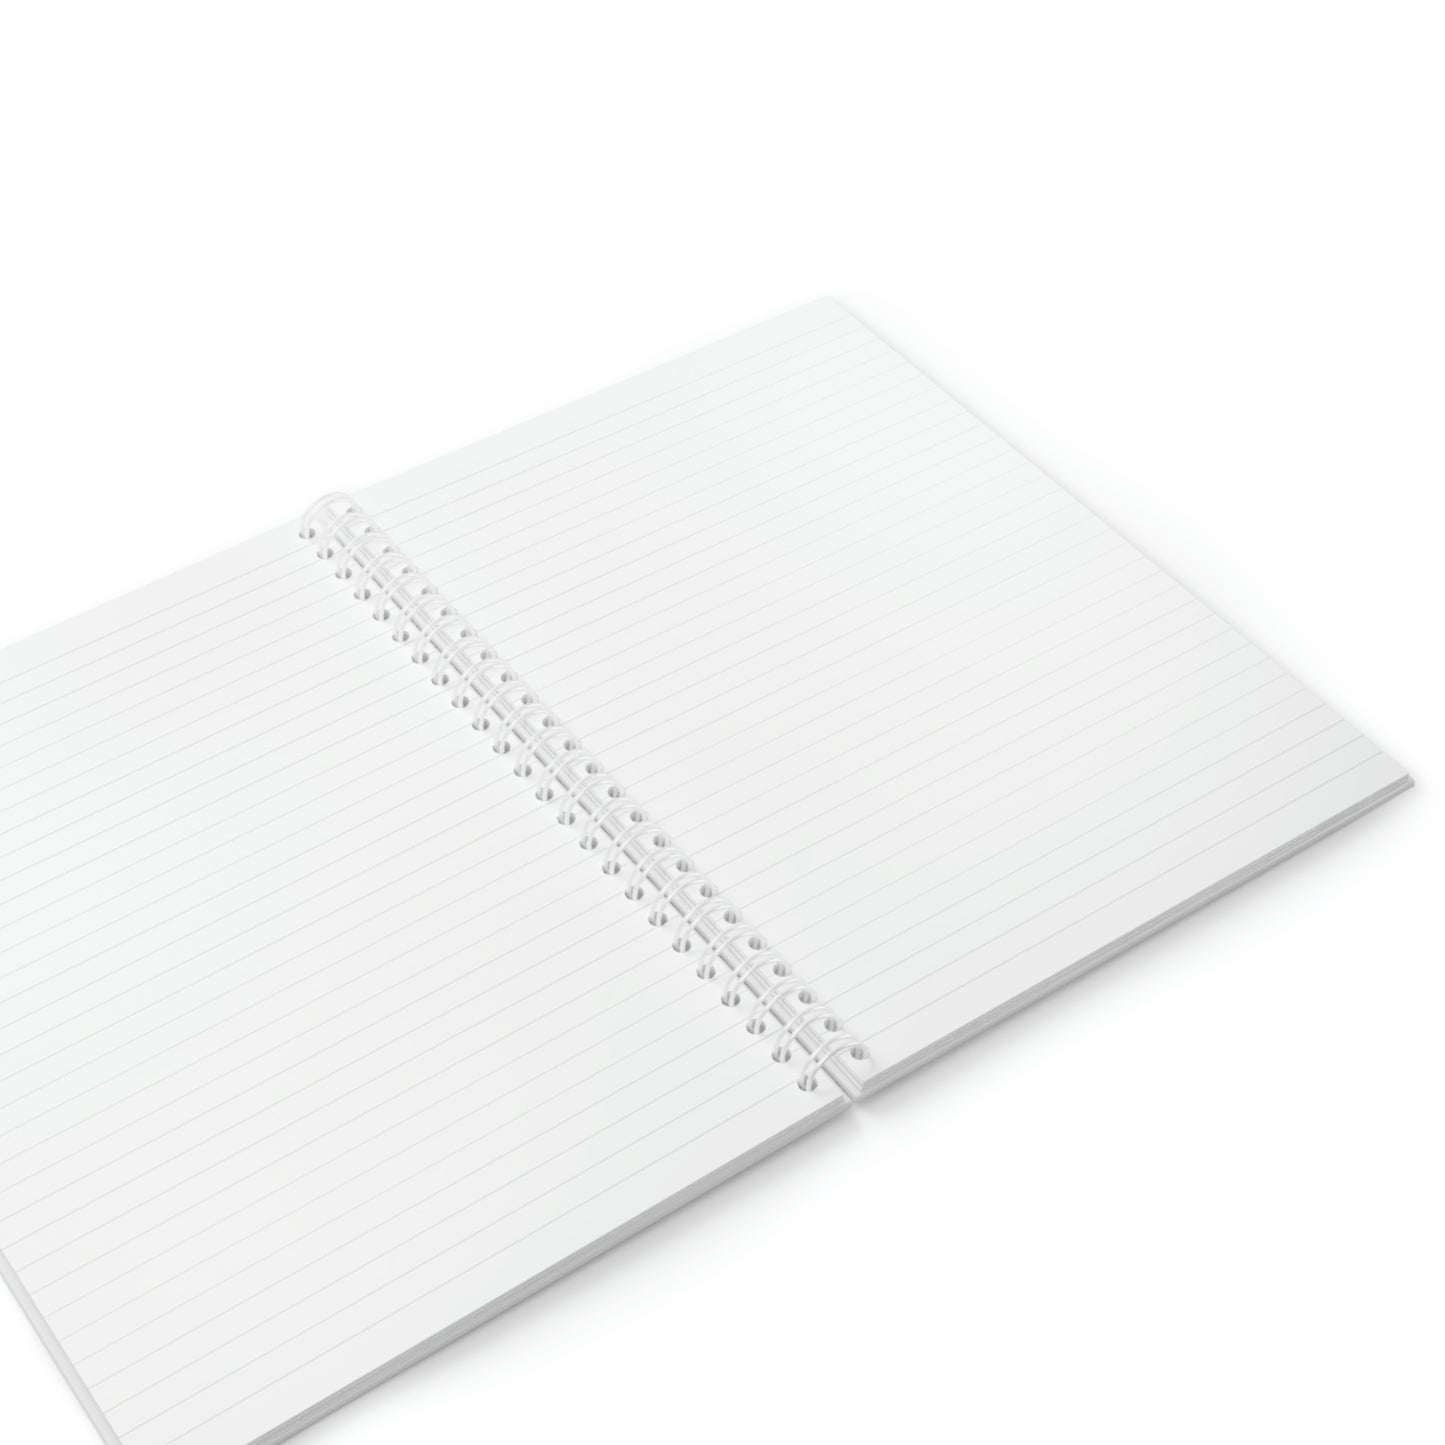 TSCS Spiral Notebook